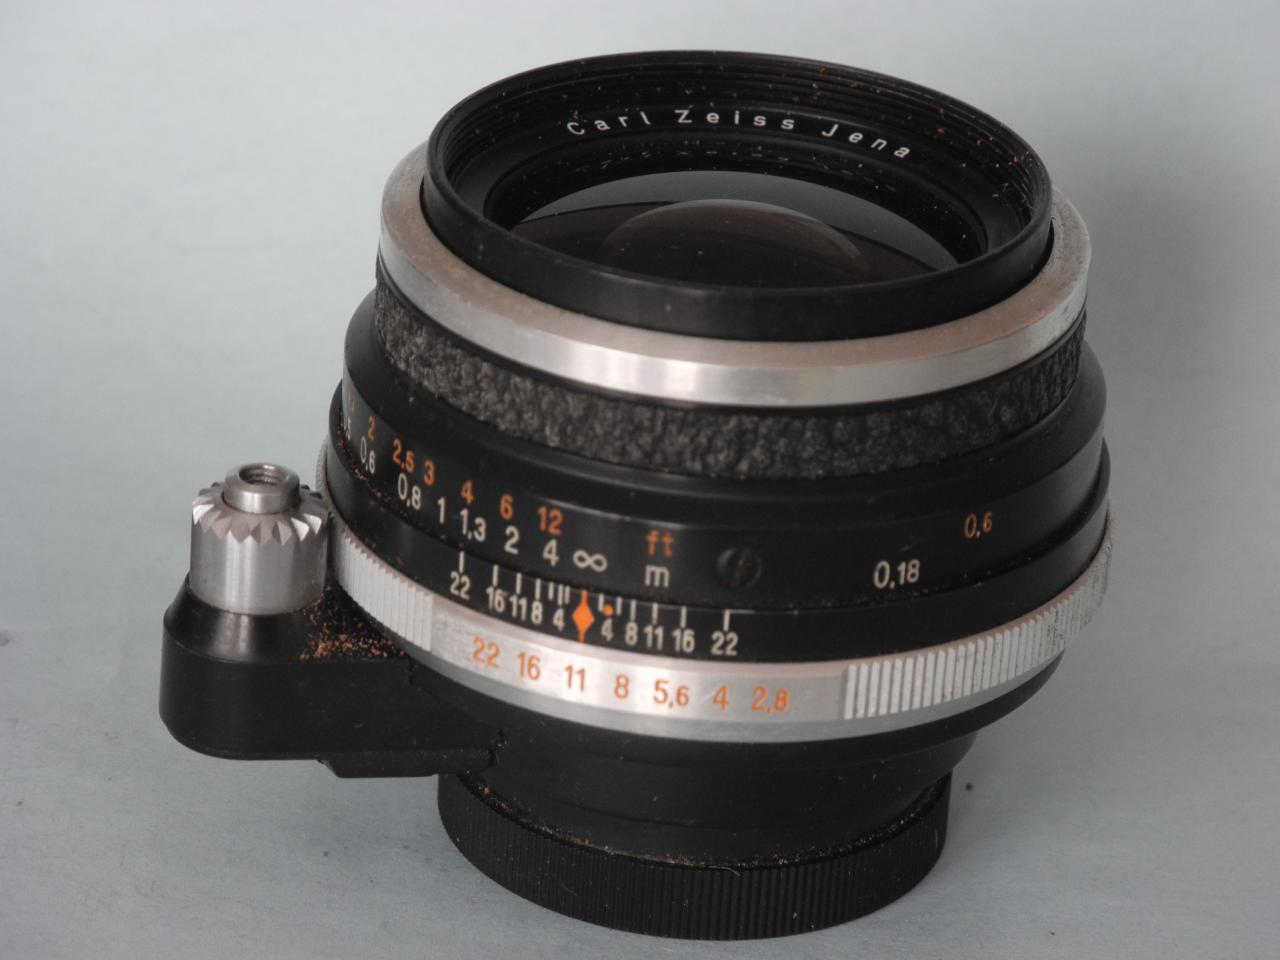 Objectif Flektogon 1:2,8/50 mm Carl Zeiss pour Exakta